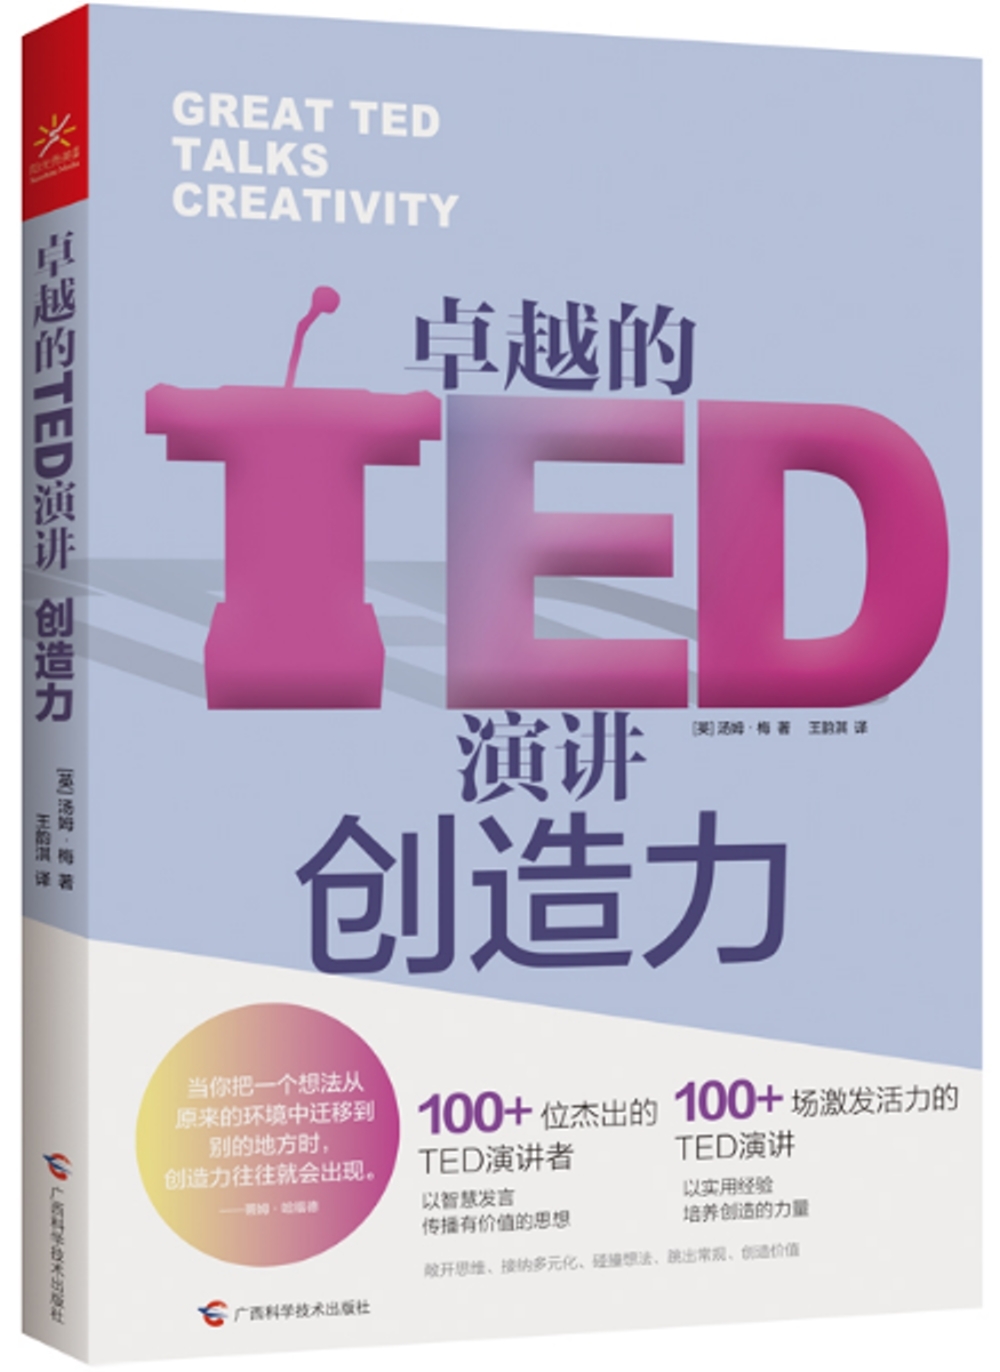 卓越的TED演講：創造力